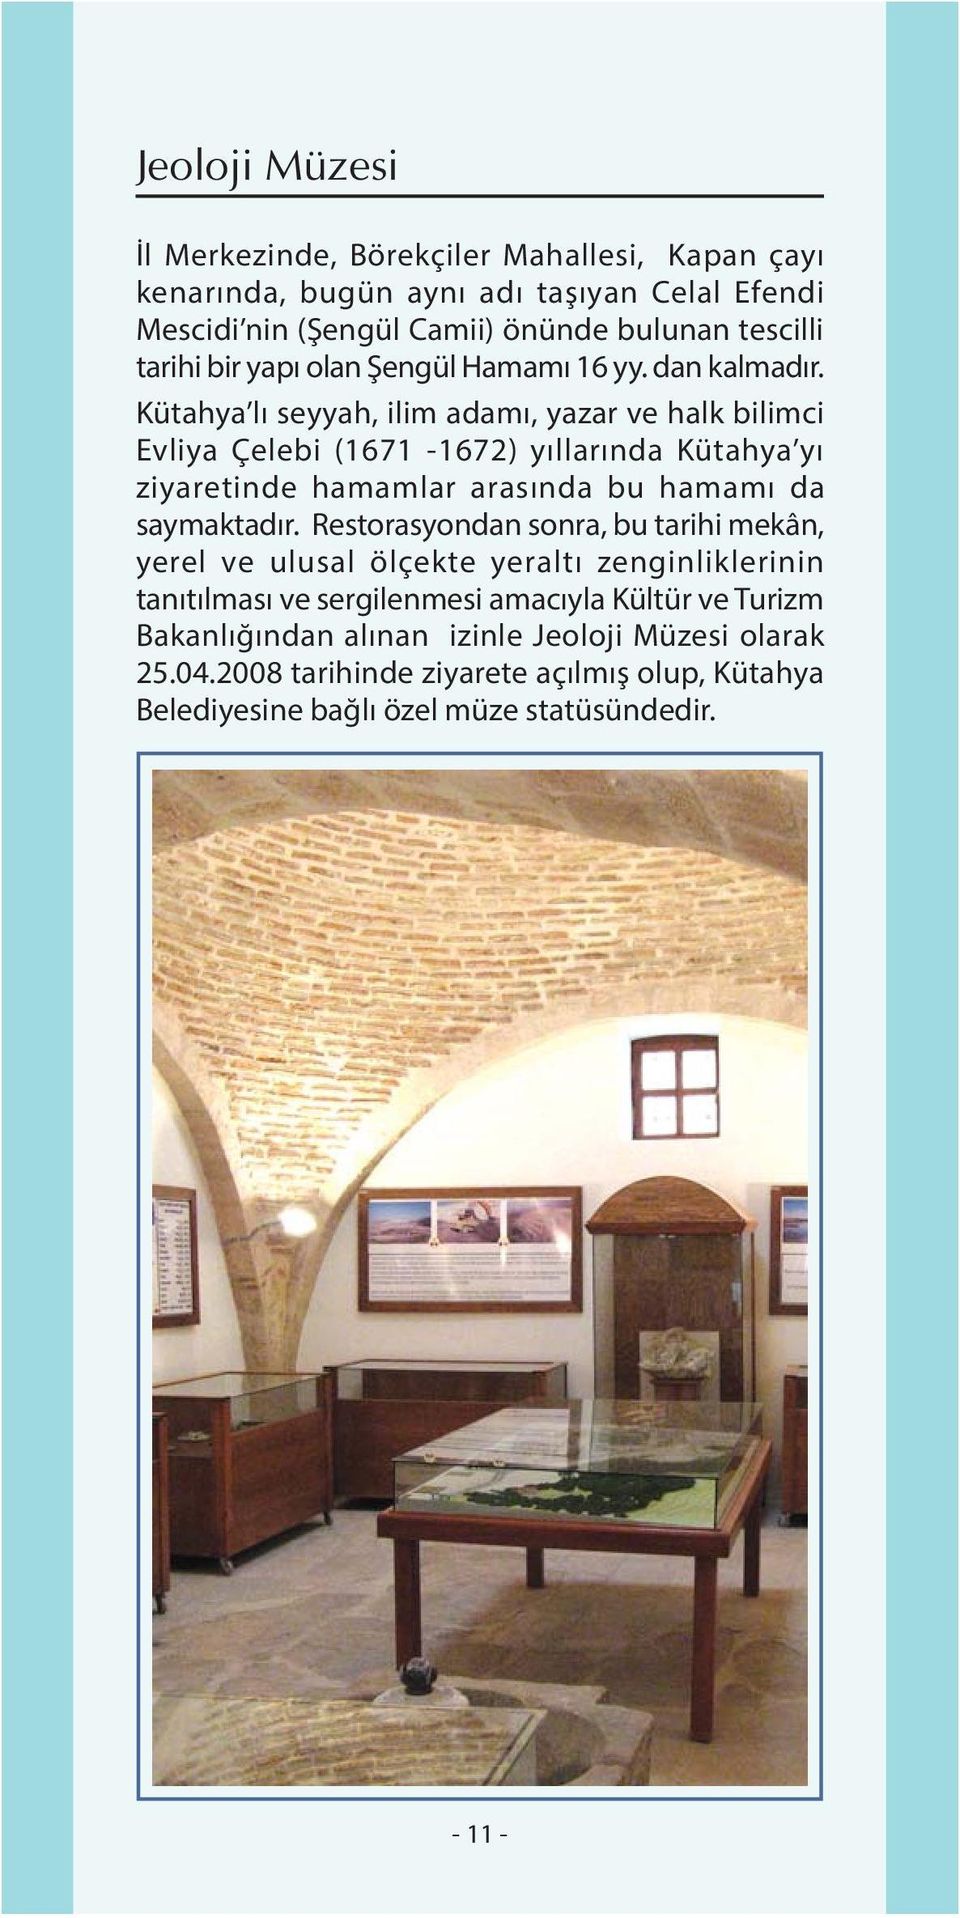 Kütahya lý seyyah, ilim adamý, yazar ve halk bilimci Evliya Çelebi (1671-1672) yýllarýnda Kütahya yý ziyaretinde hamamlar arasýnda bu hamamý da saymaktadýr.